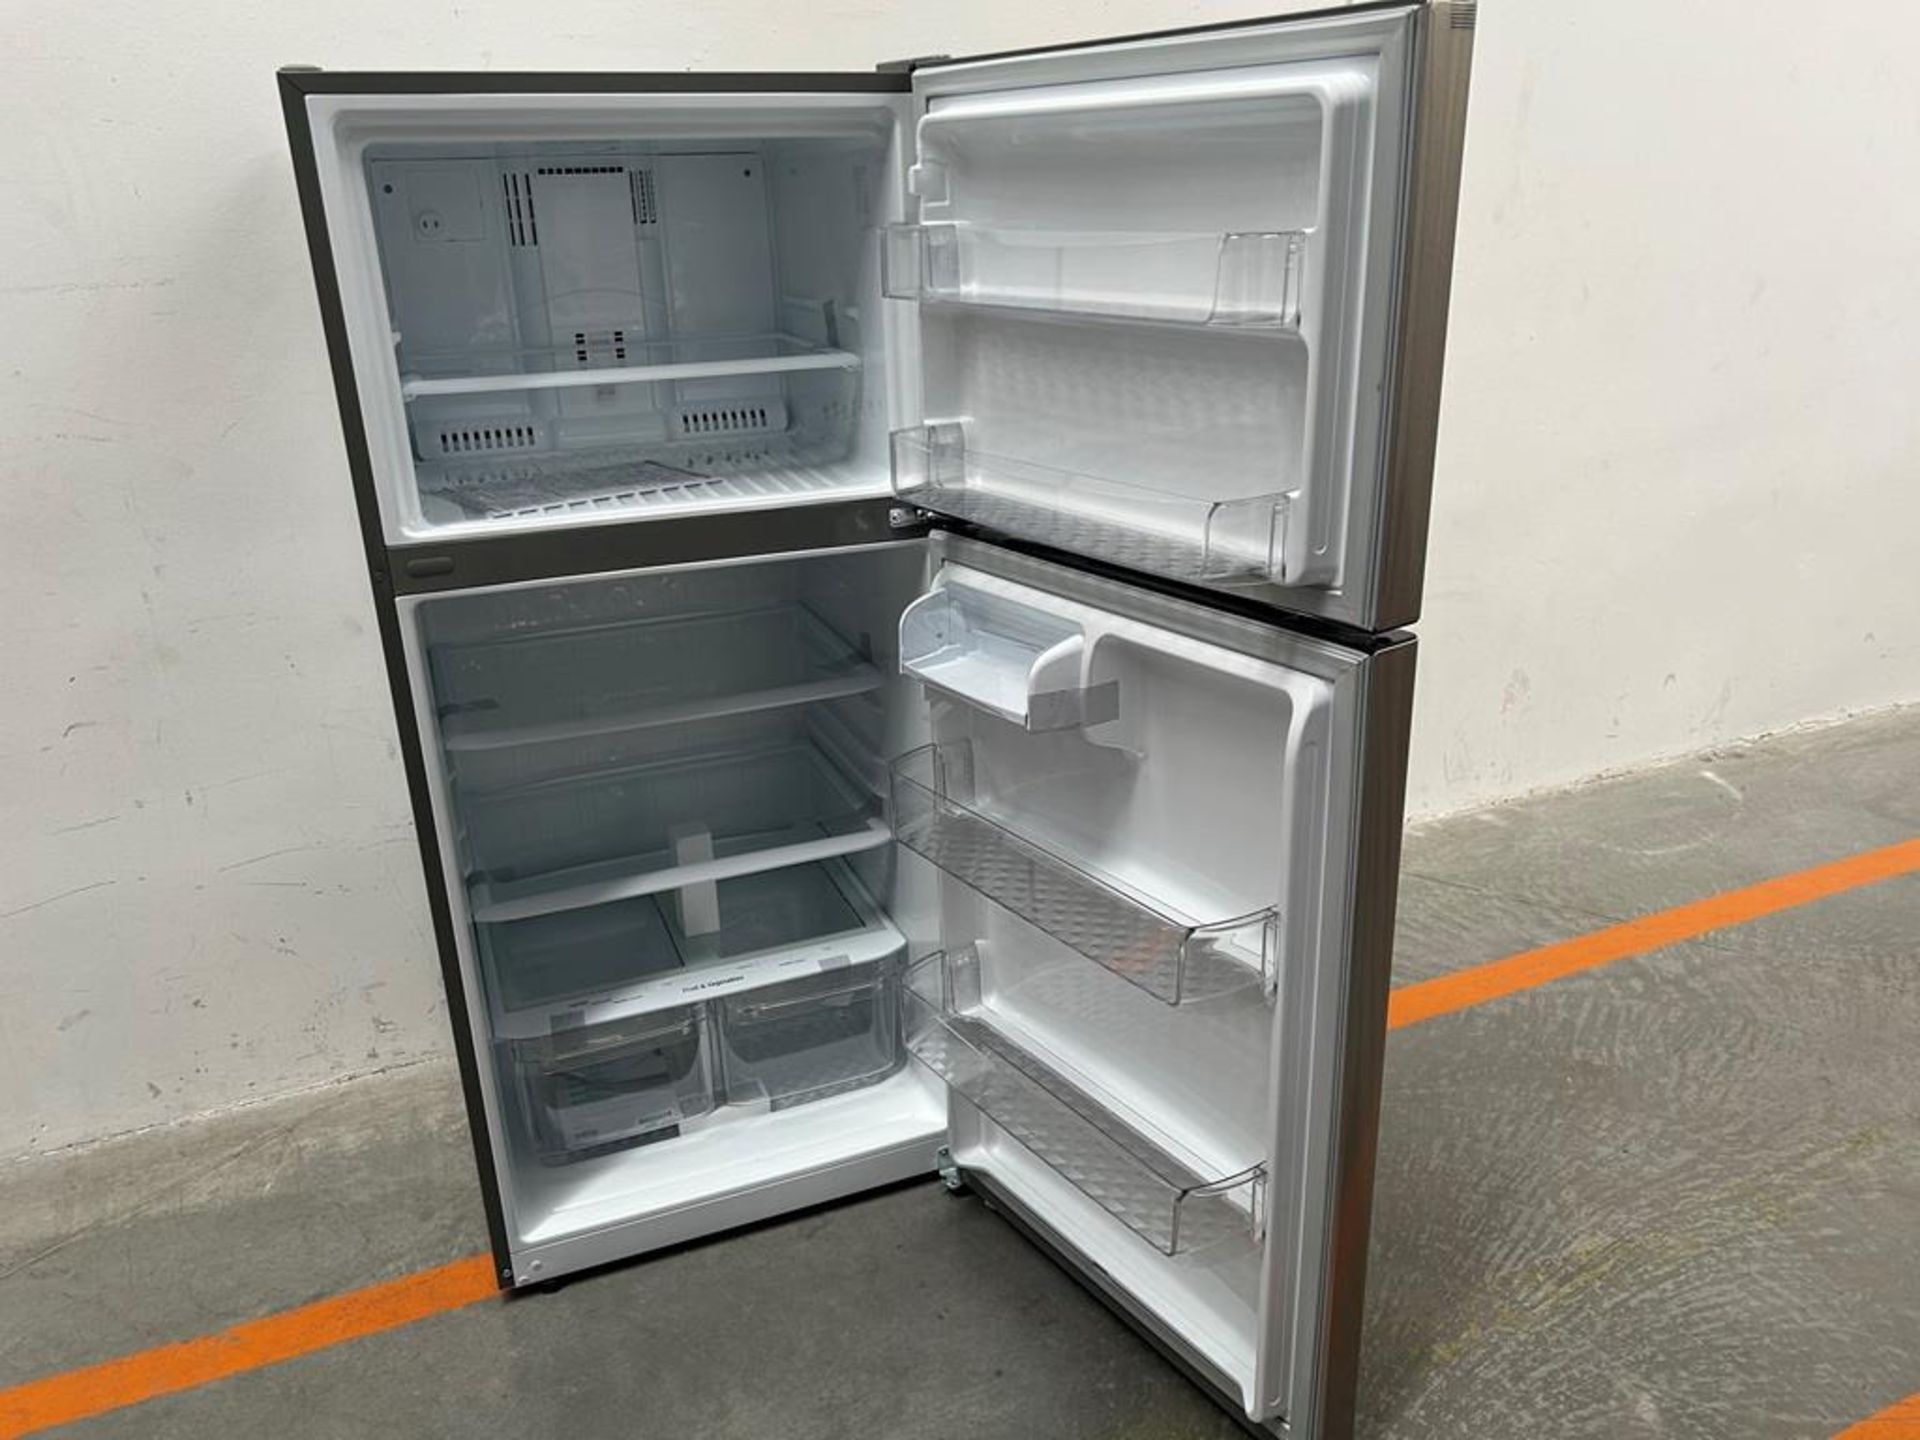 (NUEVO) Refrigerador Marca LG, Modelo LT57BPSX, Serie 1Q440, Color GRIS - Image 4 of 11